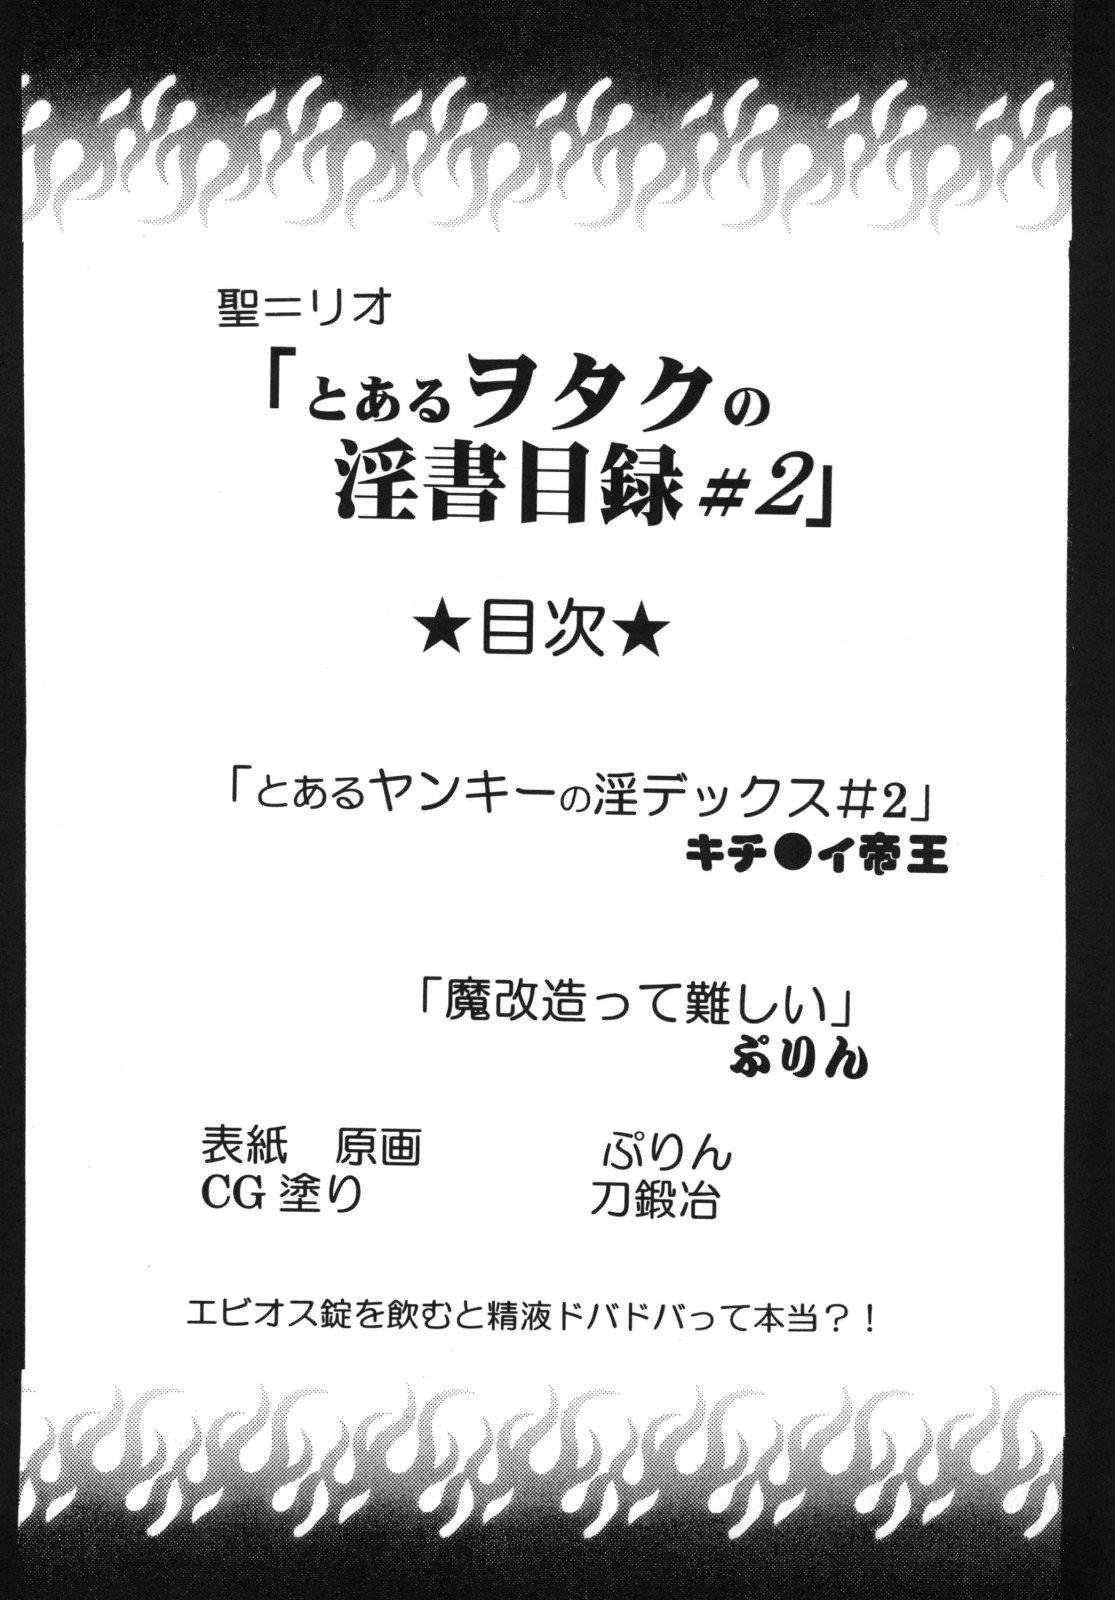 Heels Toaru Otaku no Index #2 - Toaru majutsu no index Furry - Page 4